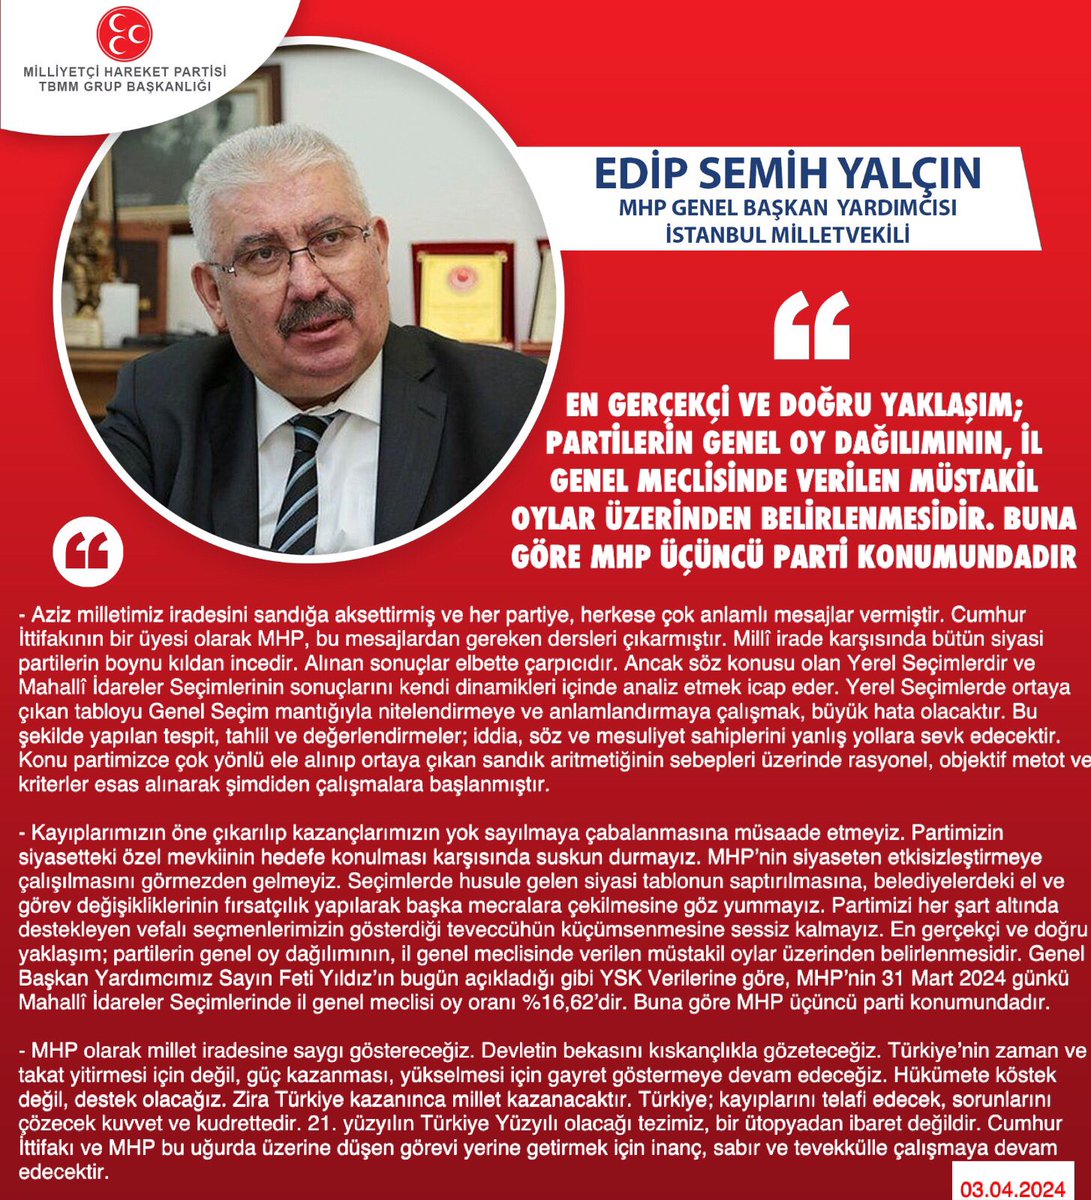 MHP Genel Başkan Yardımcısı ve İstanbul Milletvekilimiz Prof. Dr. E. Semih Yalçın @E_SemihYalcin: En gerçekçi ve doğru yaklaşım; partilerin genel oy dağılımının, il genel meclisinde verilen müstakil oylar üzerinden belirlenmesidir. Buna göre MHP üçüncü parti konumundadır.